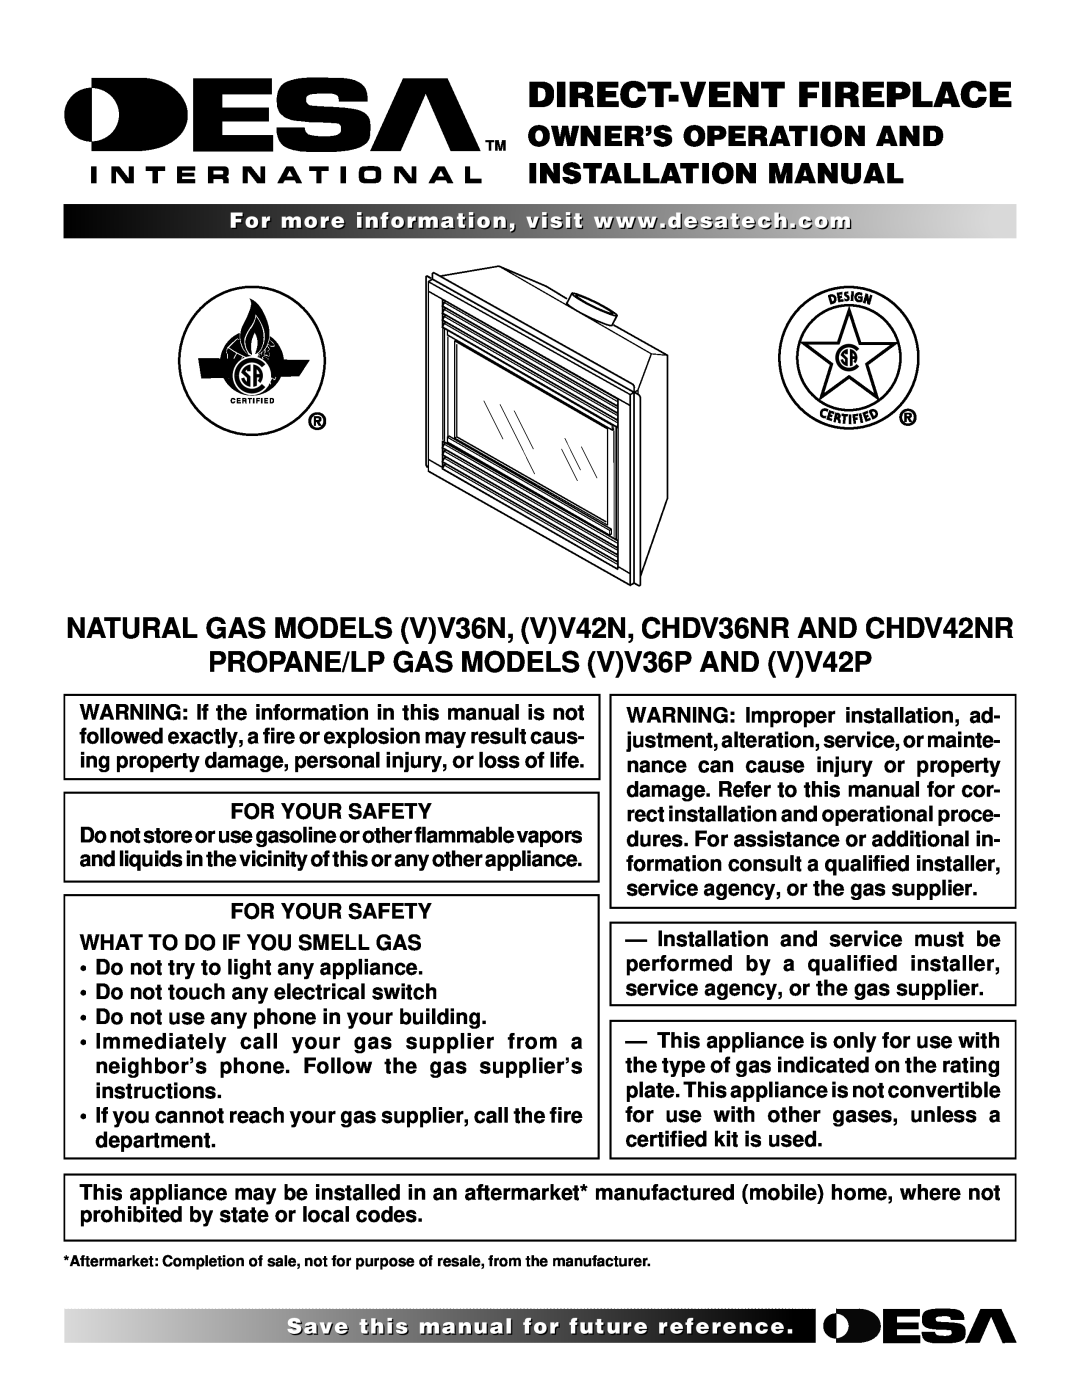 Desa (V)V42N installation manual Tm Owner’S Operation And Installation Manual, PROPANE/LP GAS MODELS VV36P AND VV42P 